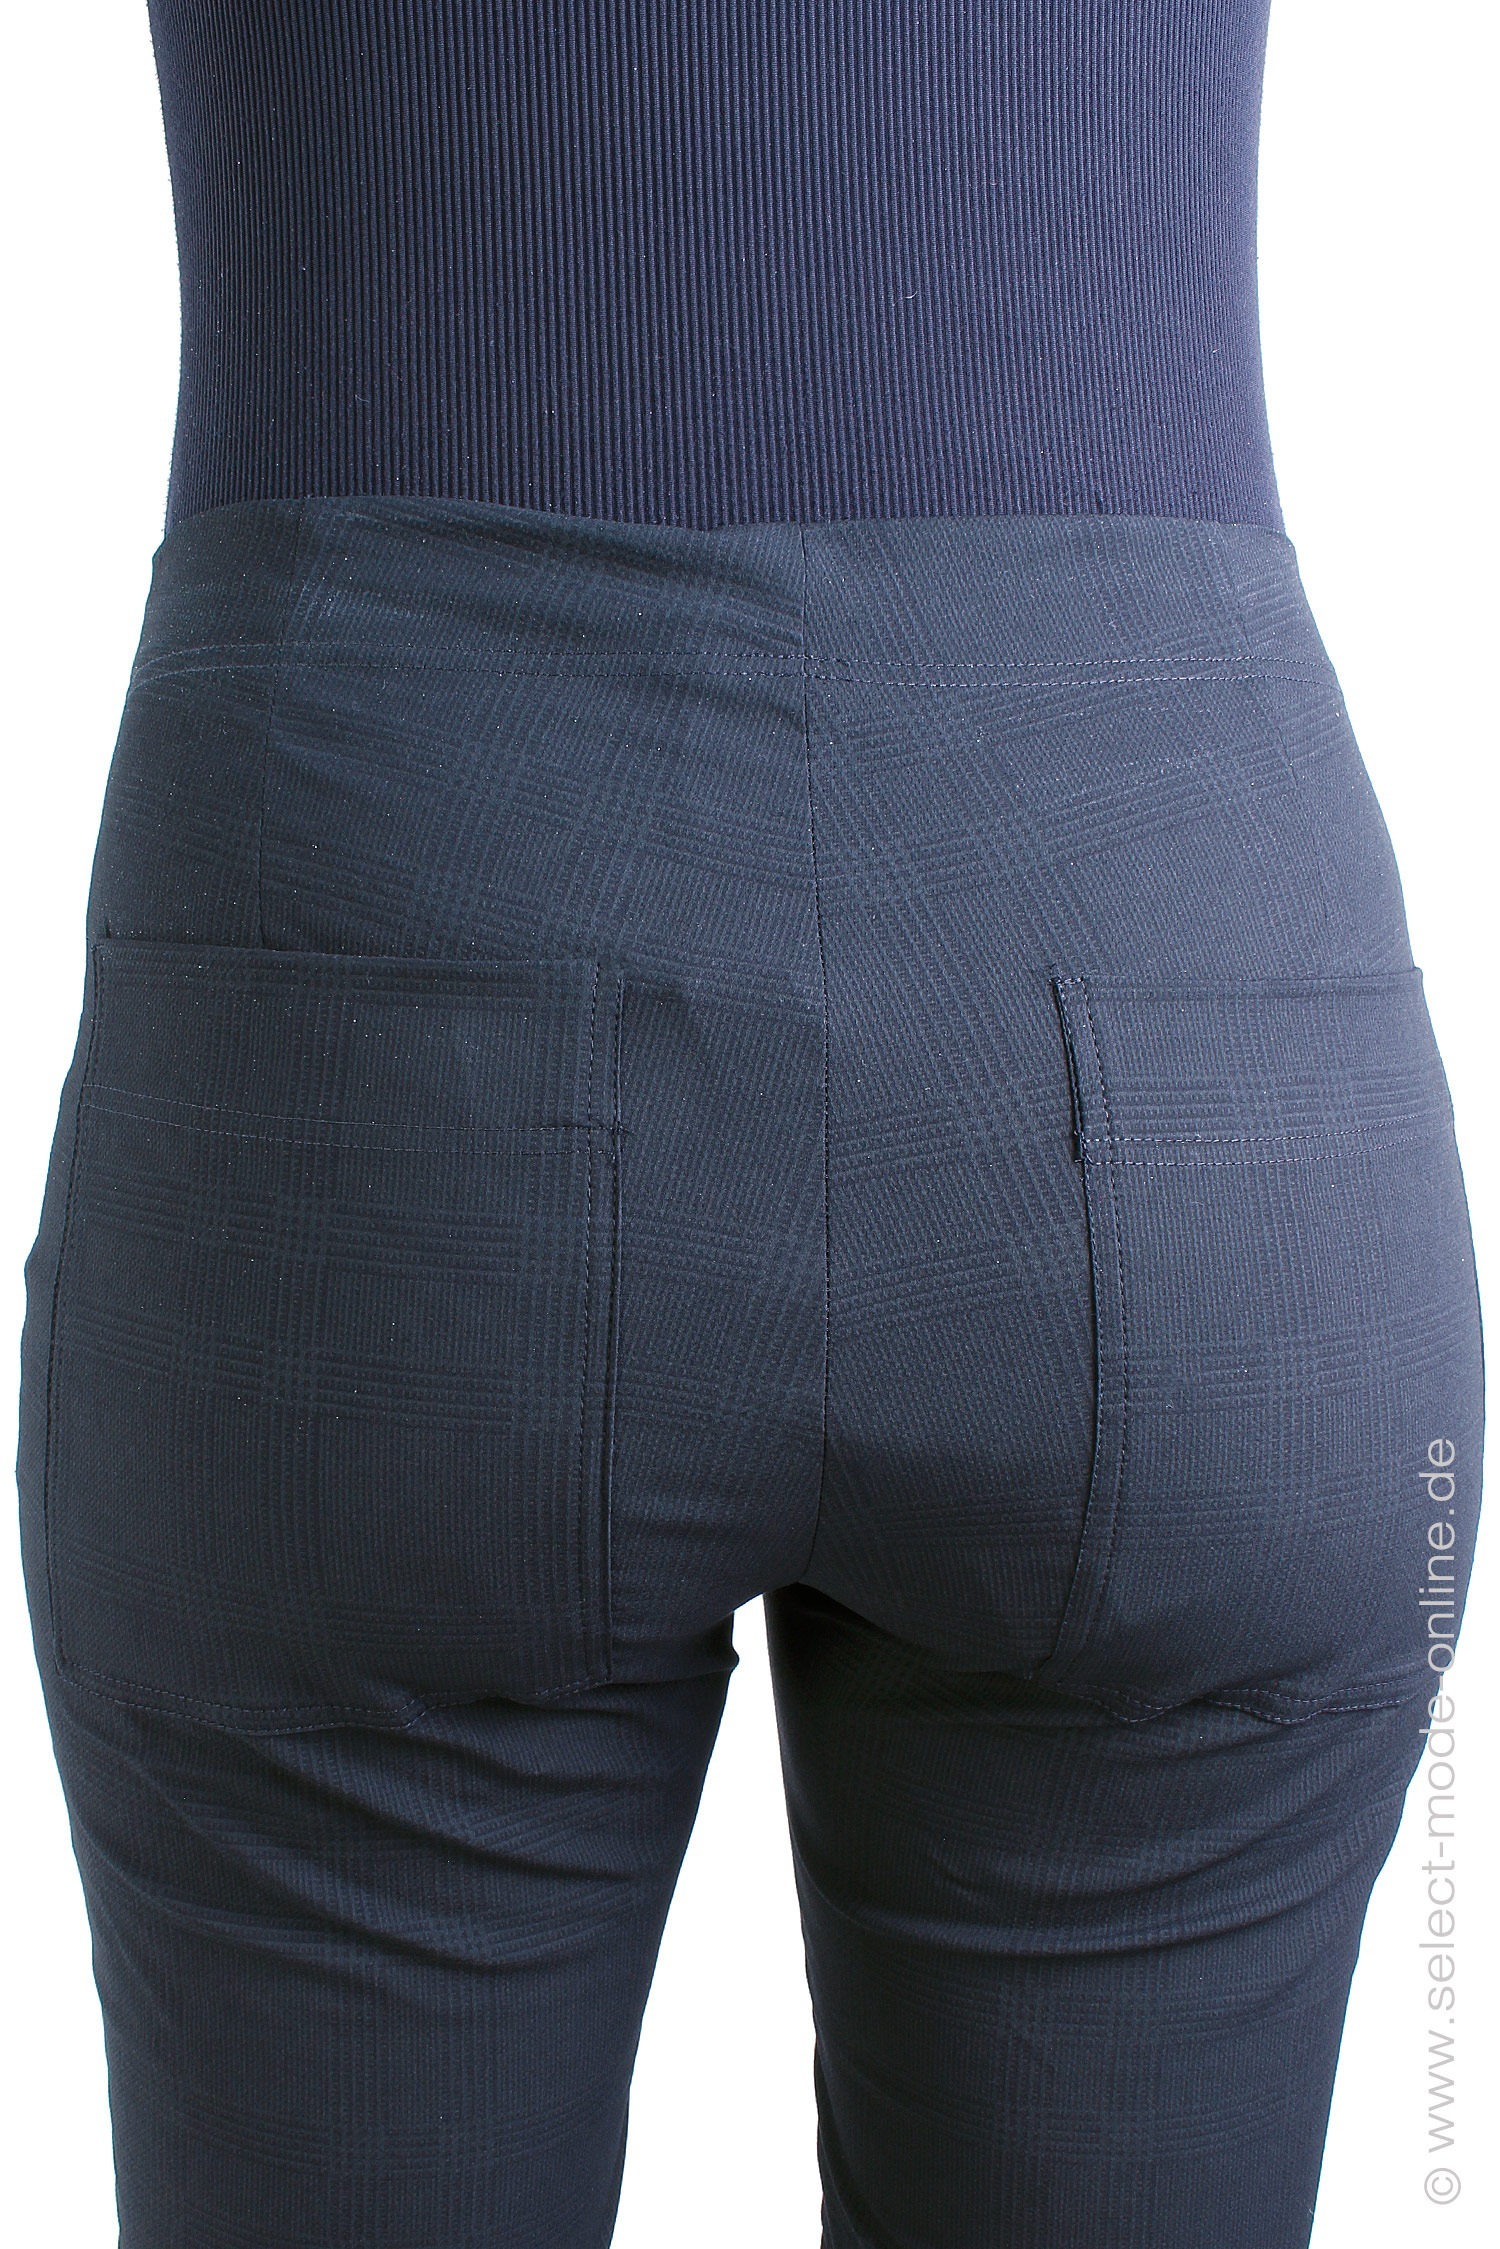 Stretch pants - black check